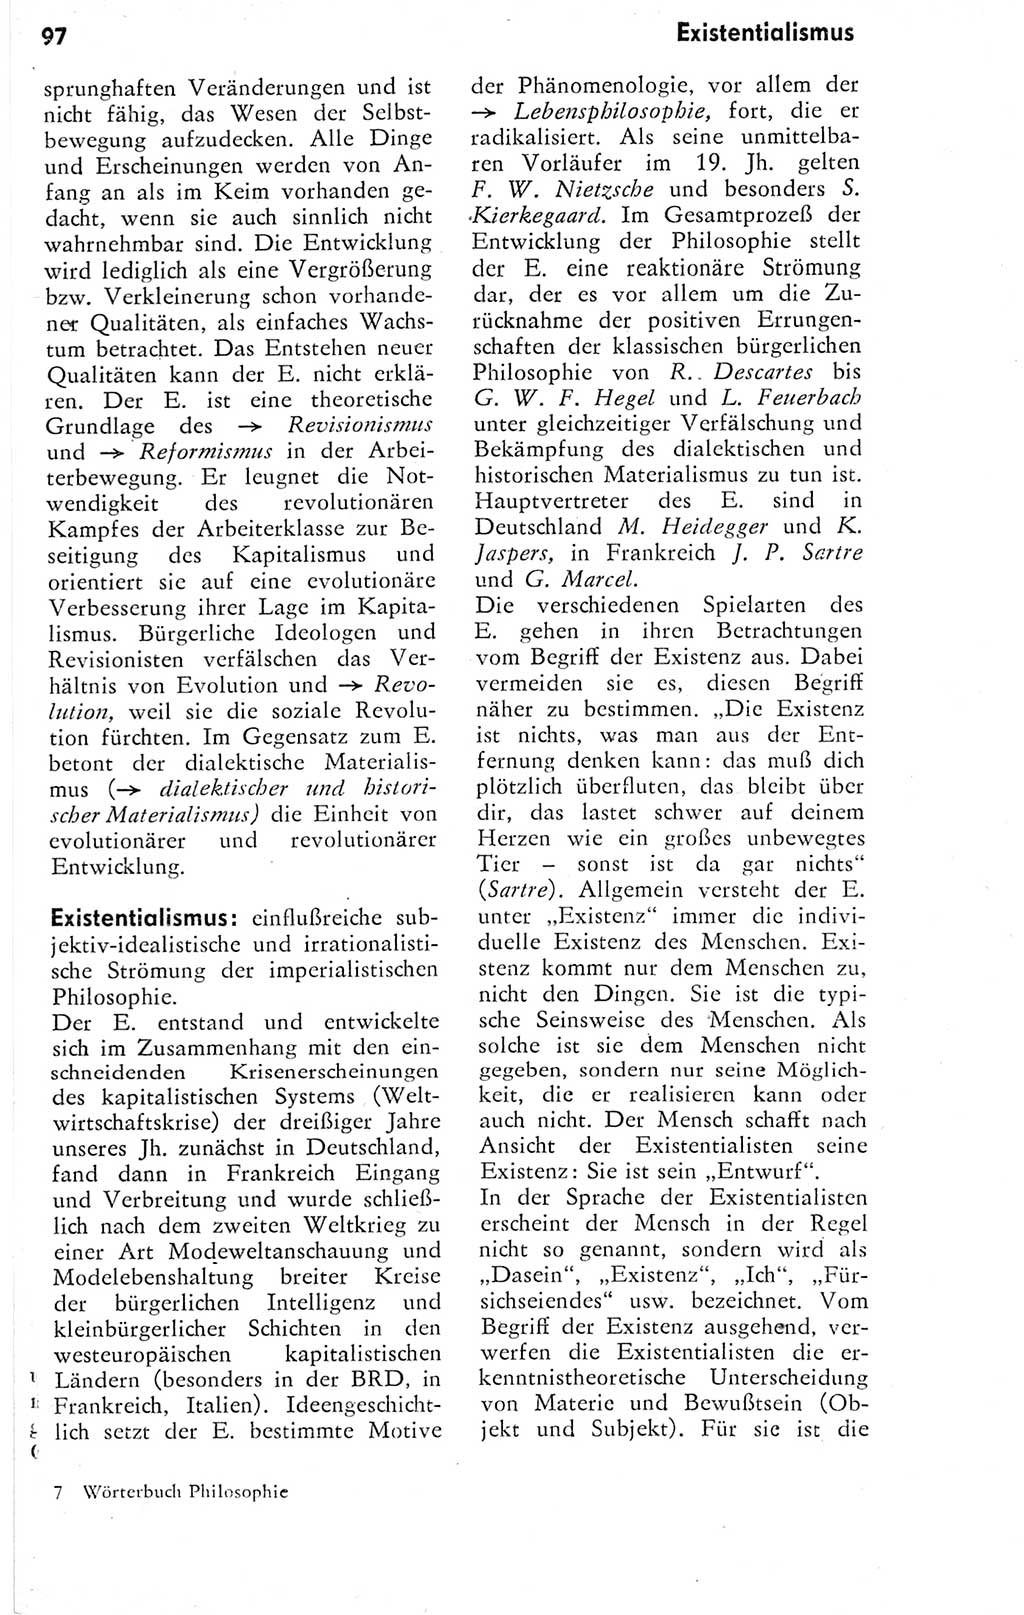 Kleines Wörterbuch der marxistisch-leninistischen Philosophie [Deutsche Demokratische Republik (DDR)] 1974, Seite 97 (Kl. Wb. ML Phil. DDR 1974, S. 97)